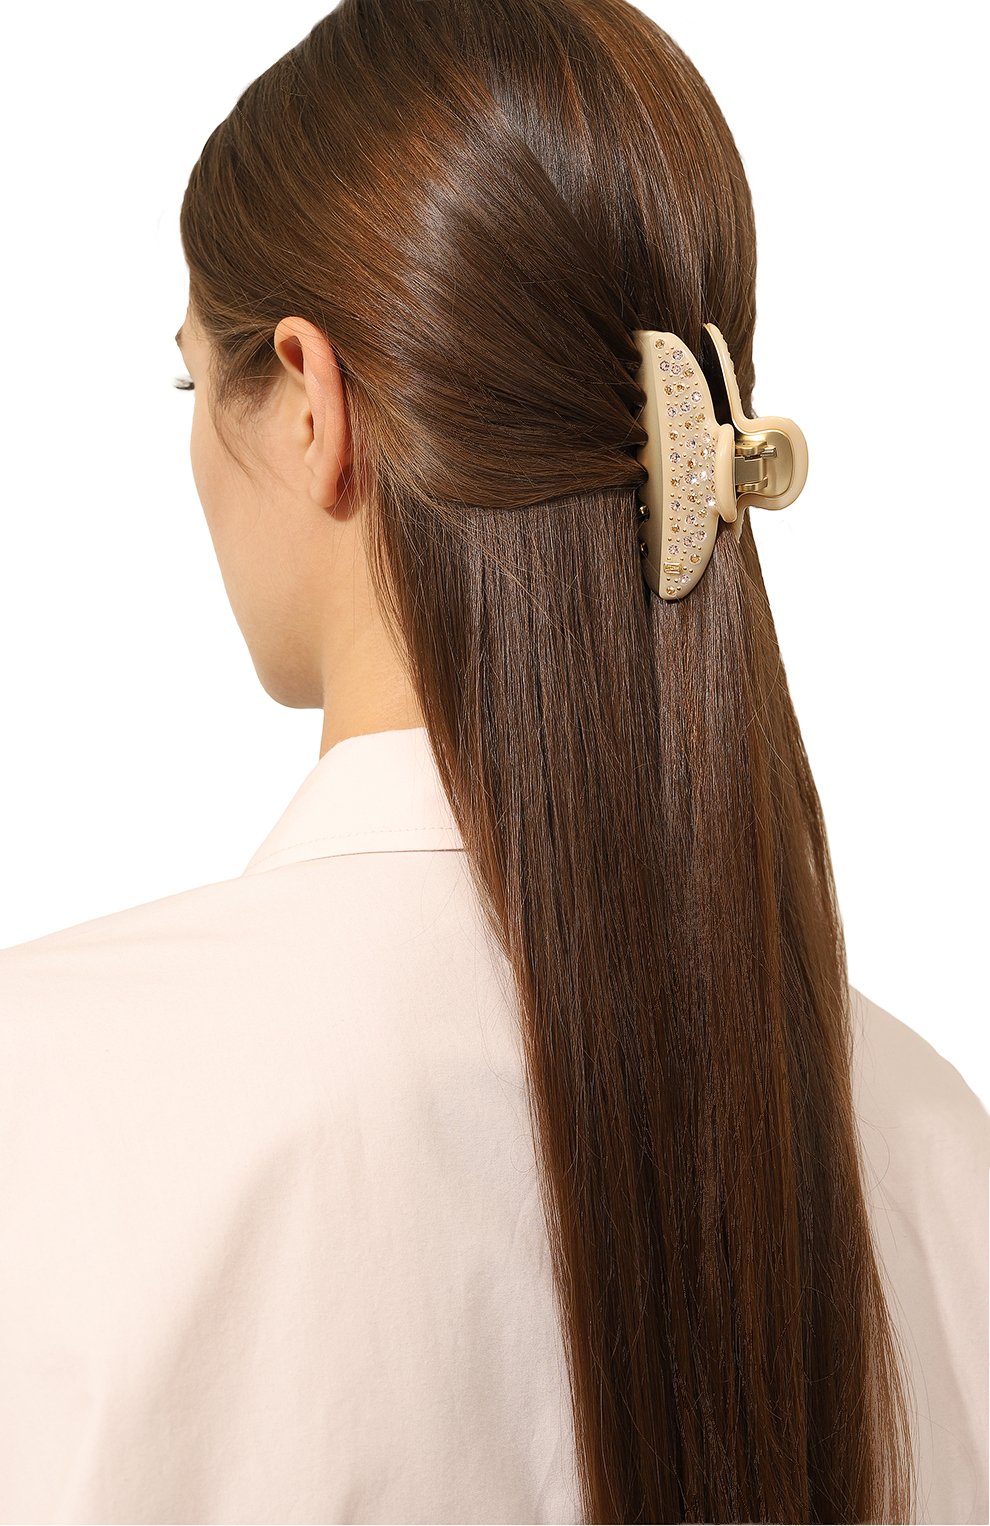 Женская заколка для волос ALEXANDRE DE PARIS бежевог о цвета, арт. ICCM-15571-04A23 OS | Фото 2 (Материал: Пластик)